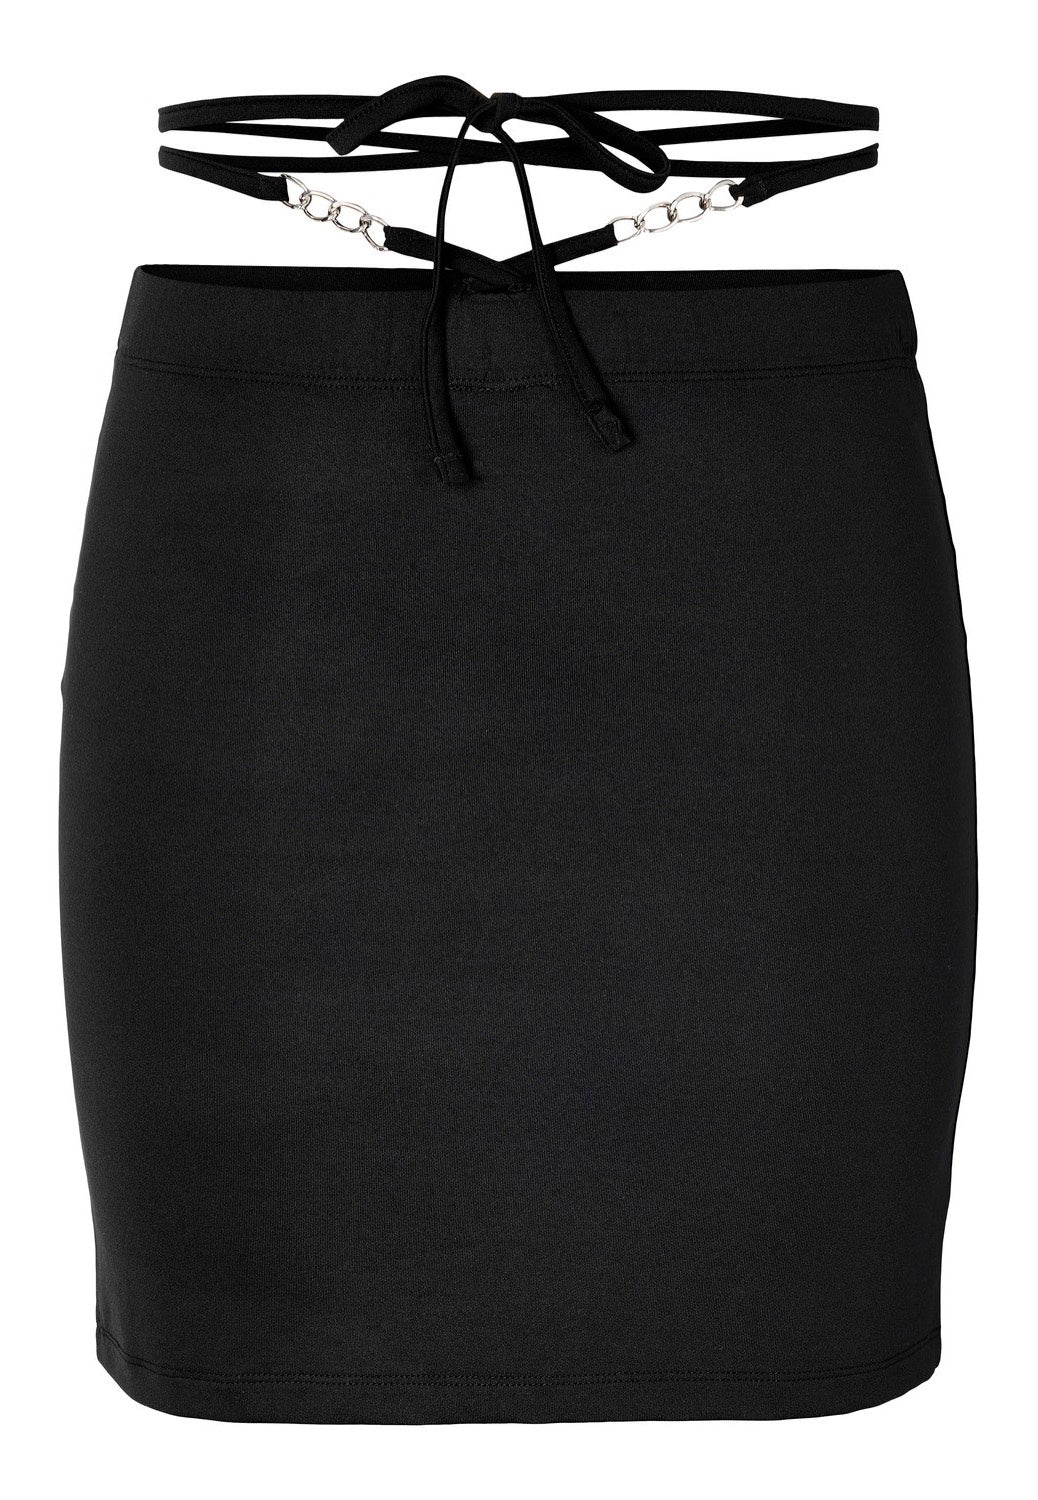 Noisy May - Celeste Chain Details Black - Skirt